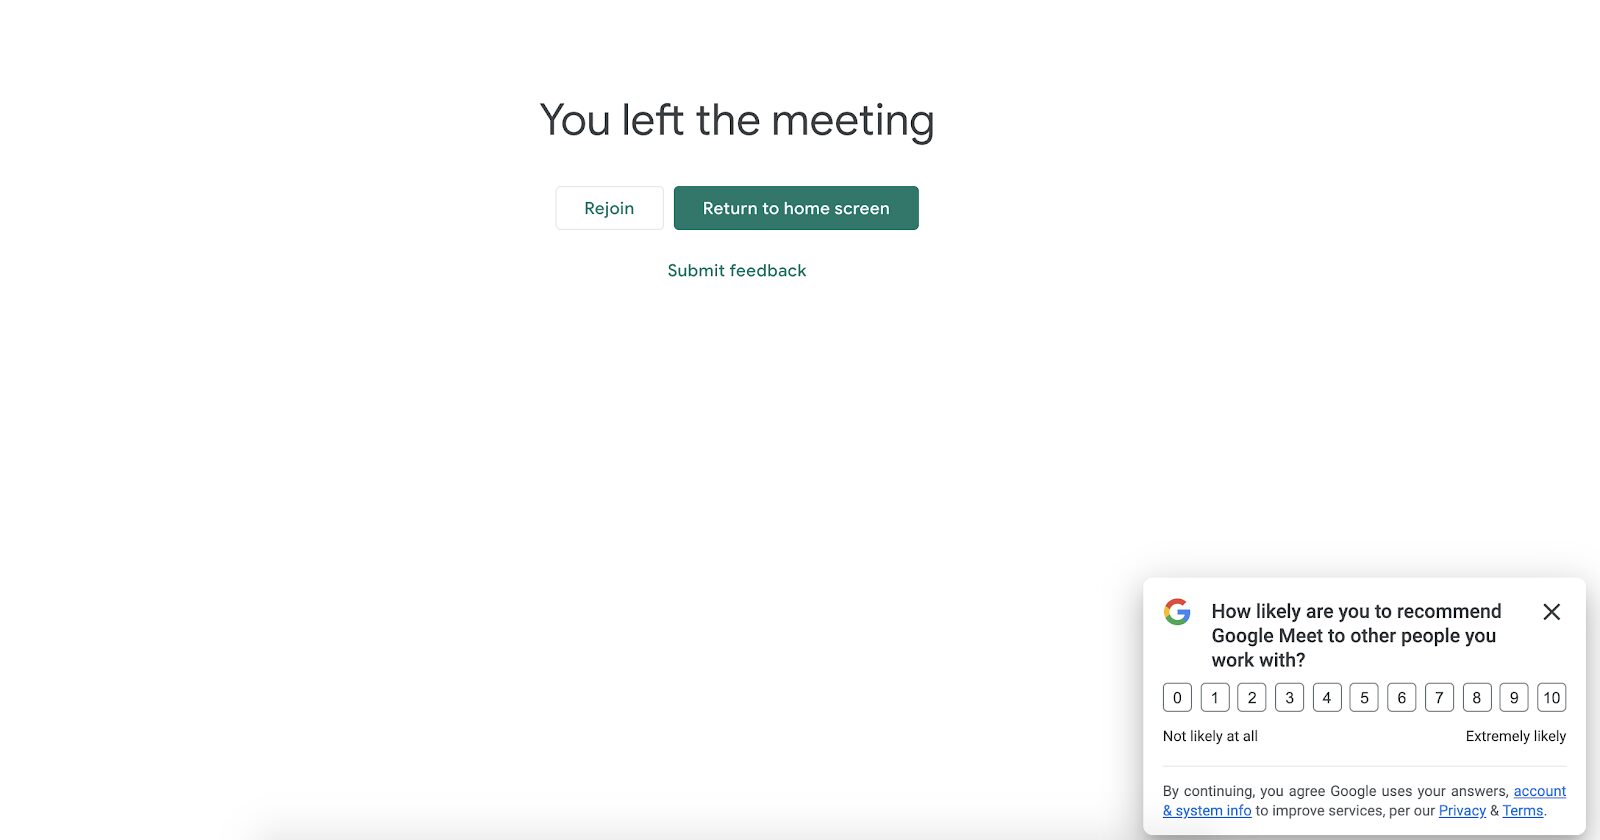 Опрос Google Meet NPS появляется после того, как посетитель завершает звонок, поэтому он может сразу же оставить отзыв о своем опыте. Это отличная тактика, позволяющая побудить пользователей делиться отзывами, пока они еще свежие.